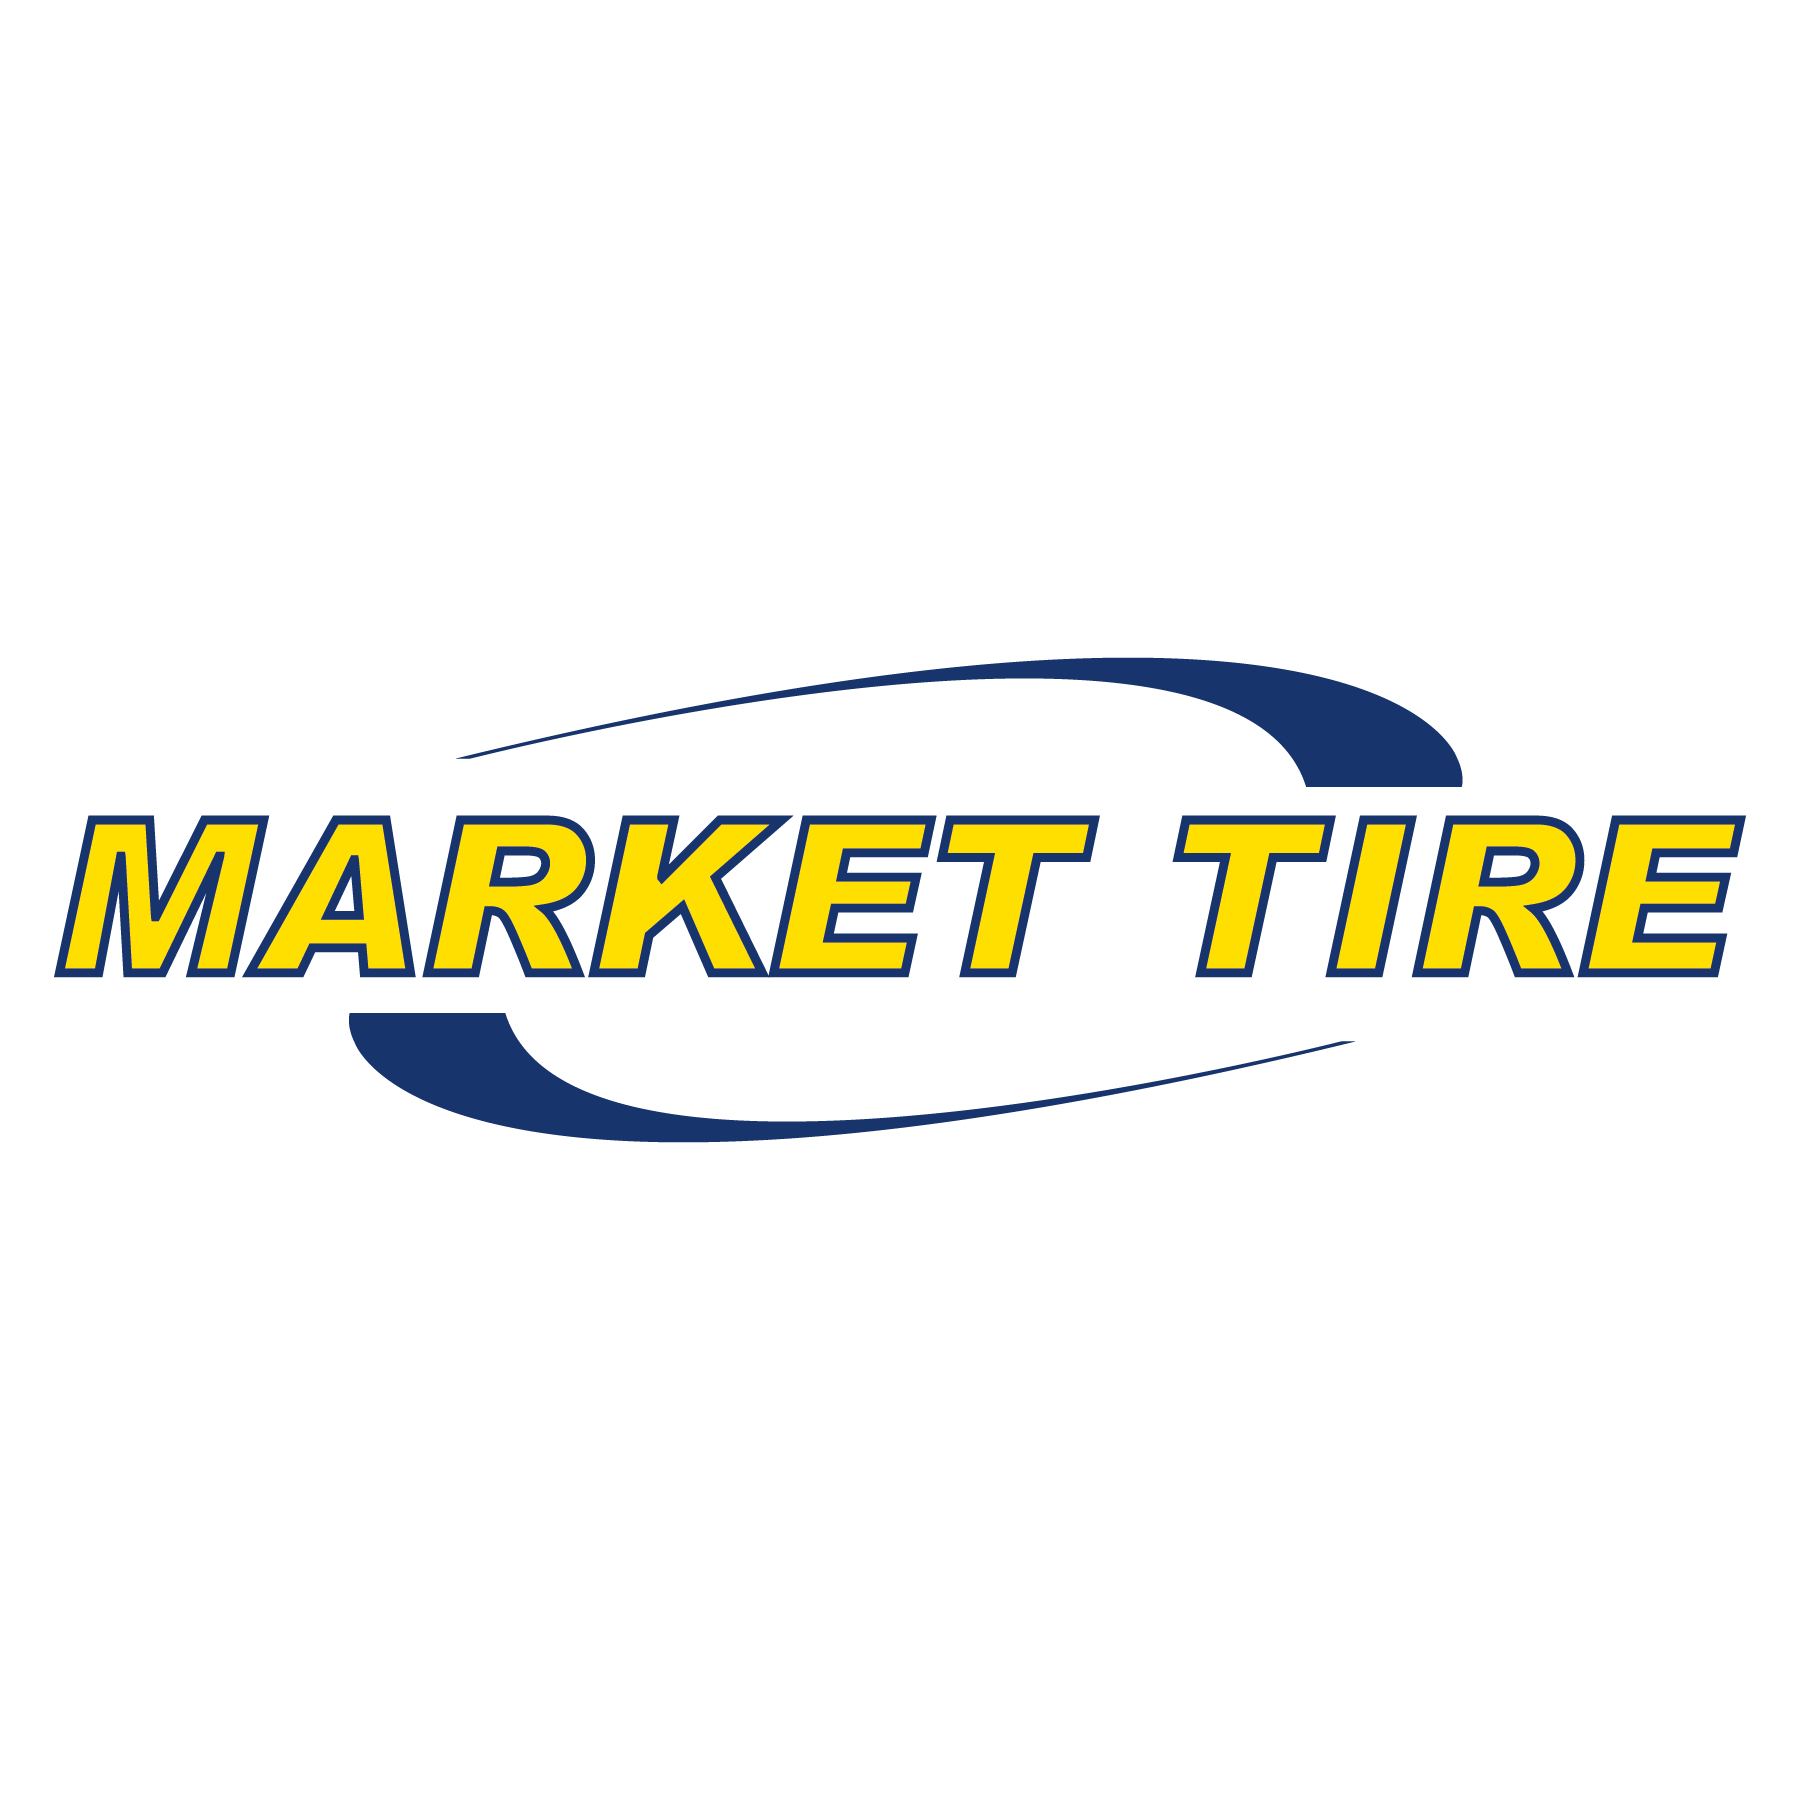 Market Tire - Tire Dealer Equipment & Supplies